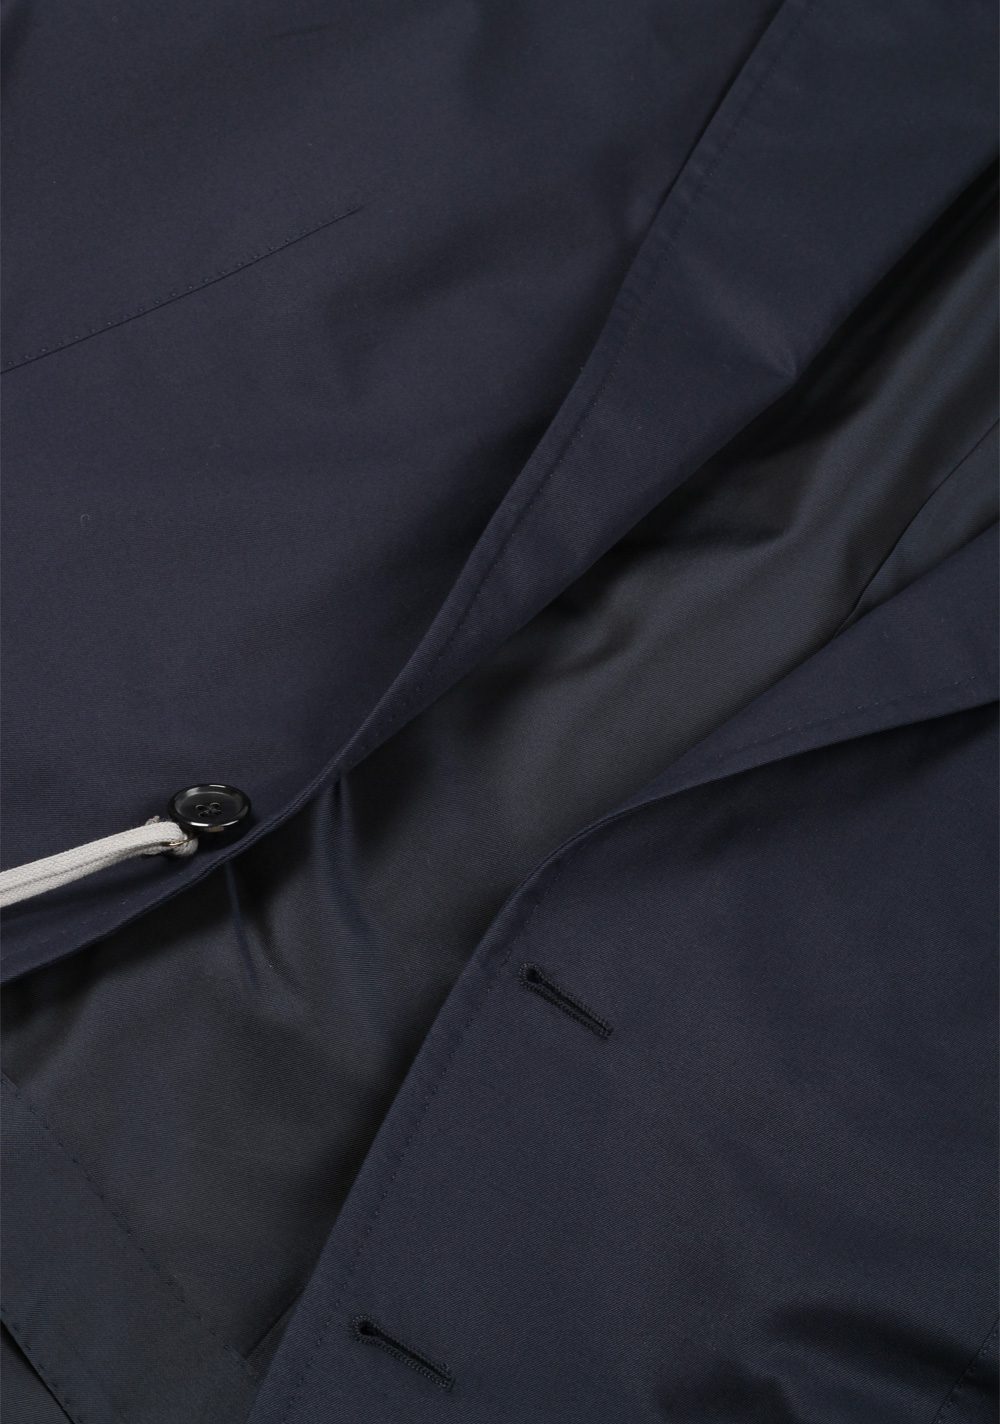 TOM FORD O’Connor Blue Suit Size 52 / 42R U.S. Cotton Fit Y | Costume Limité